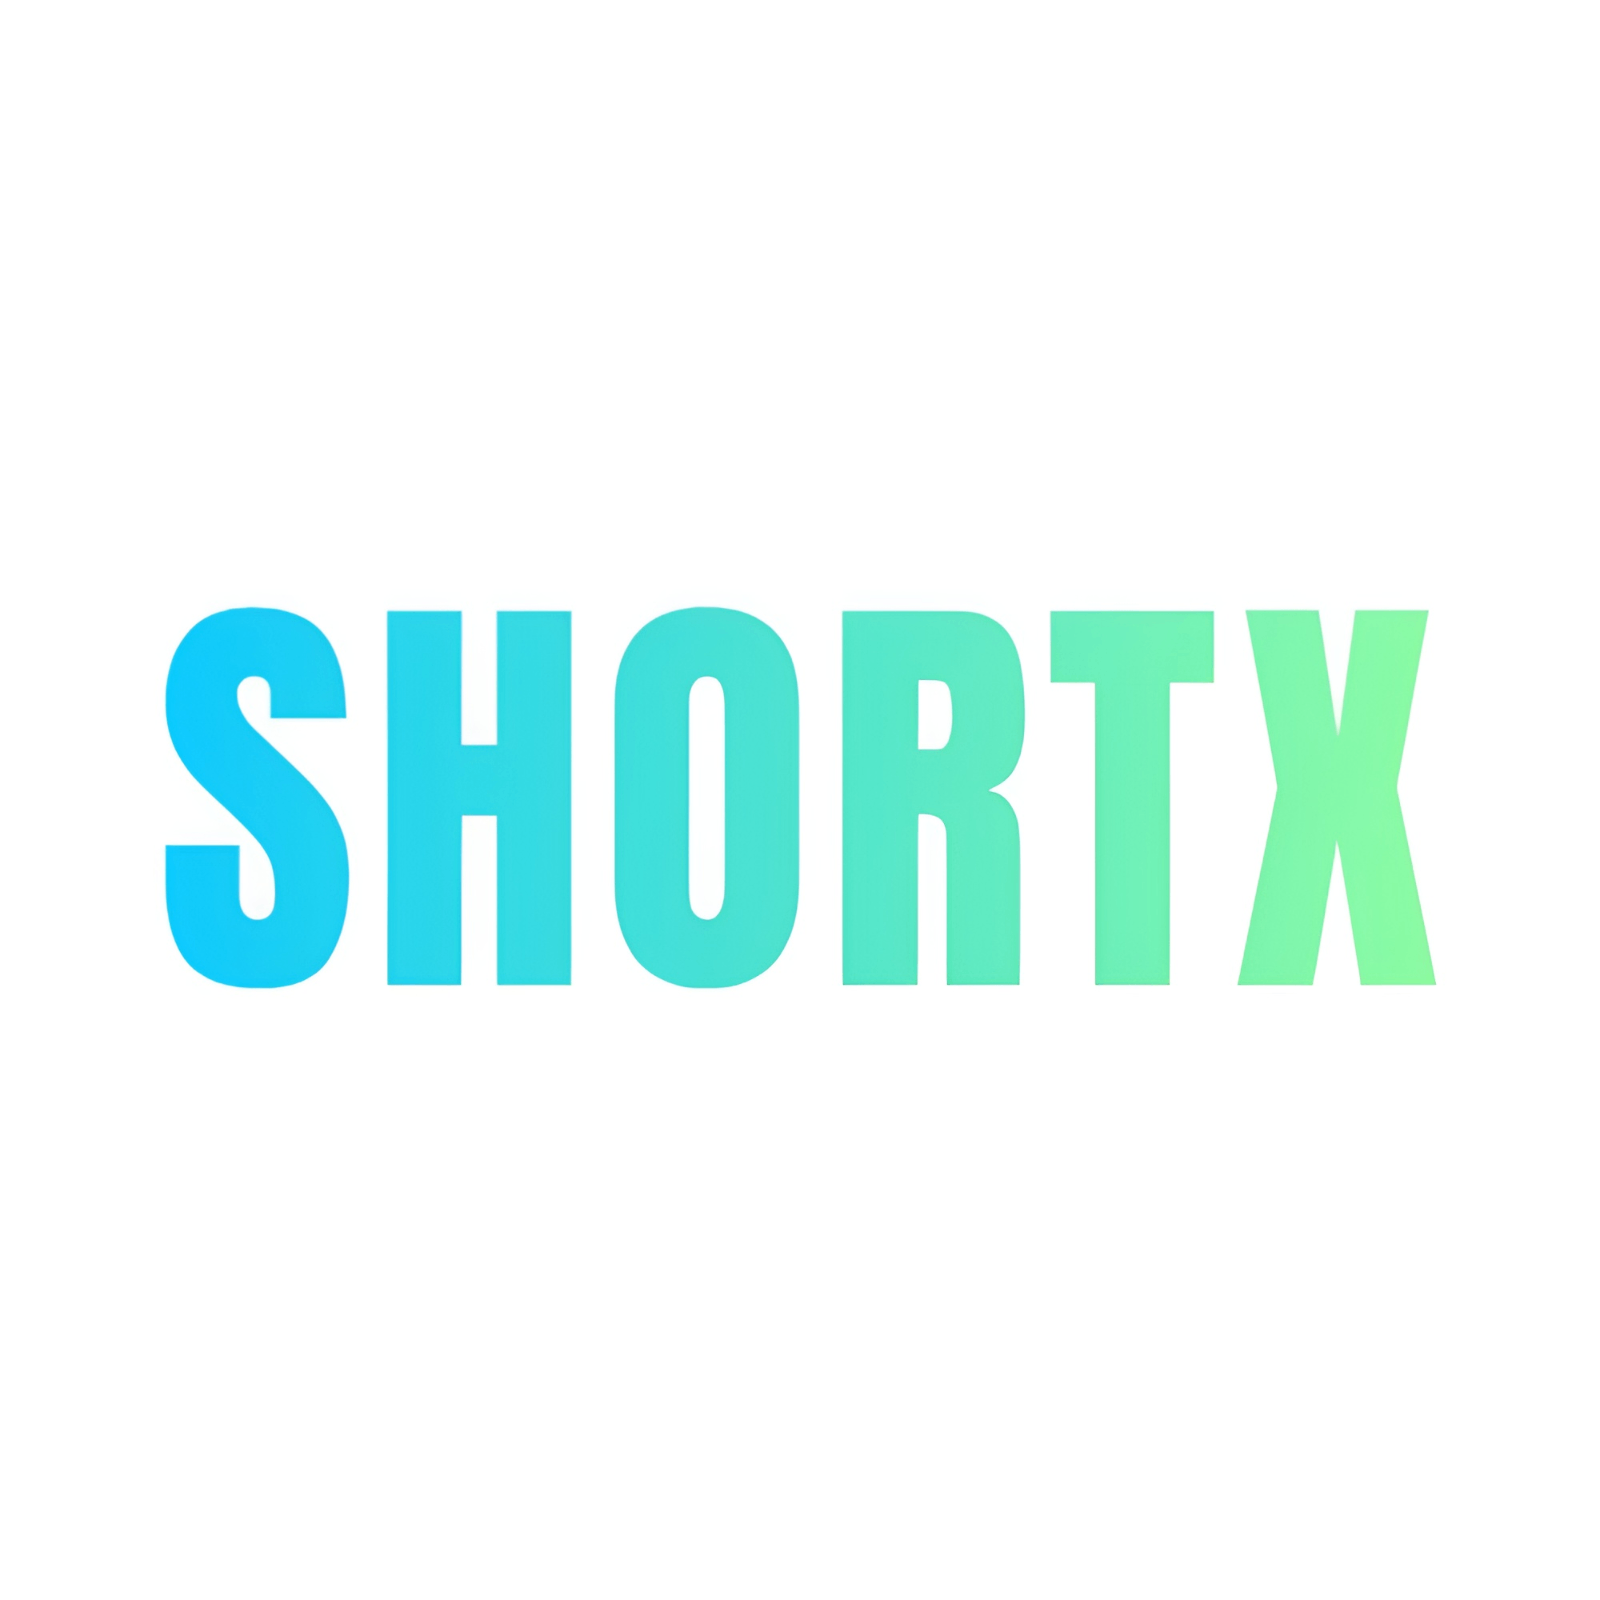 ShortX